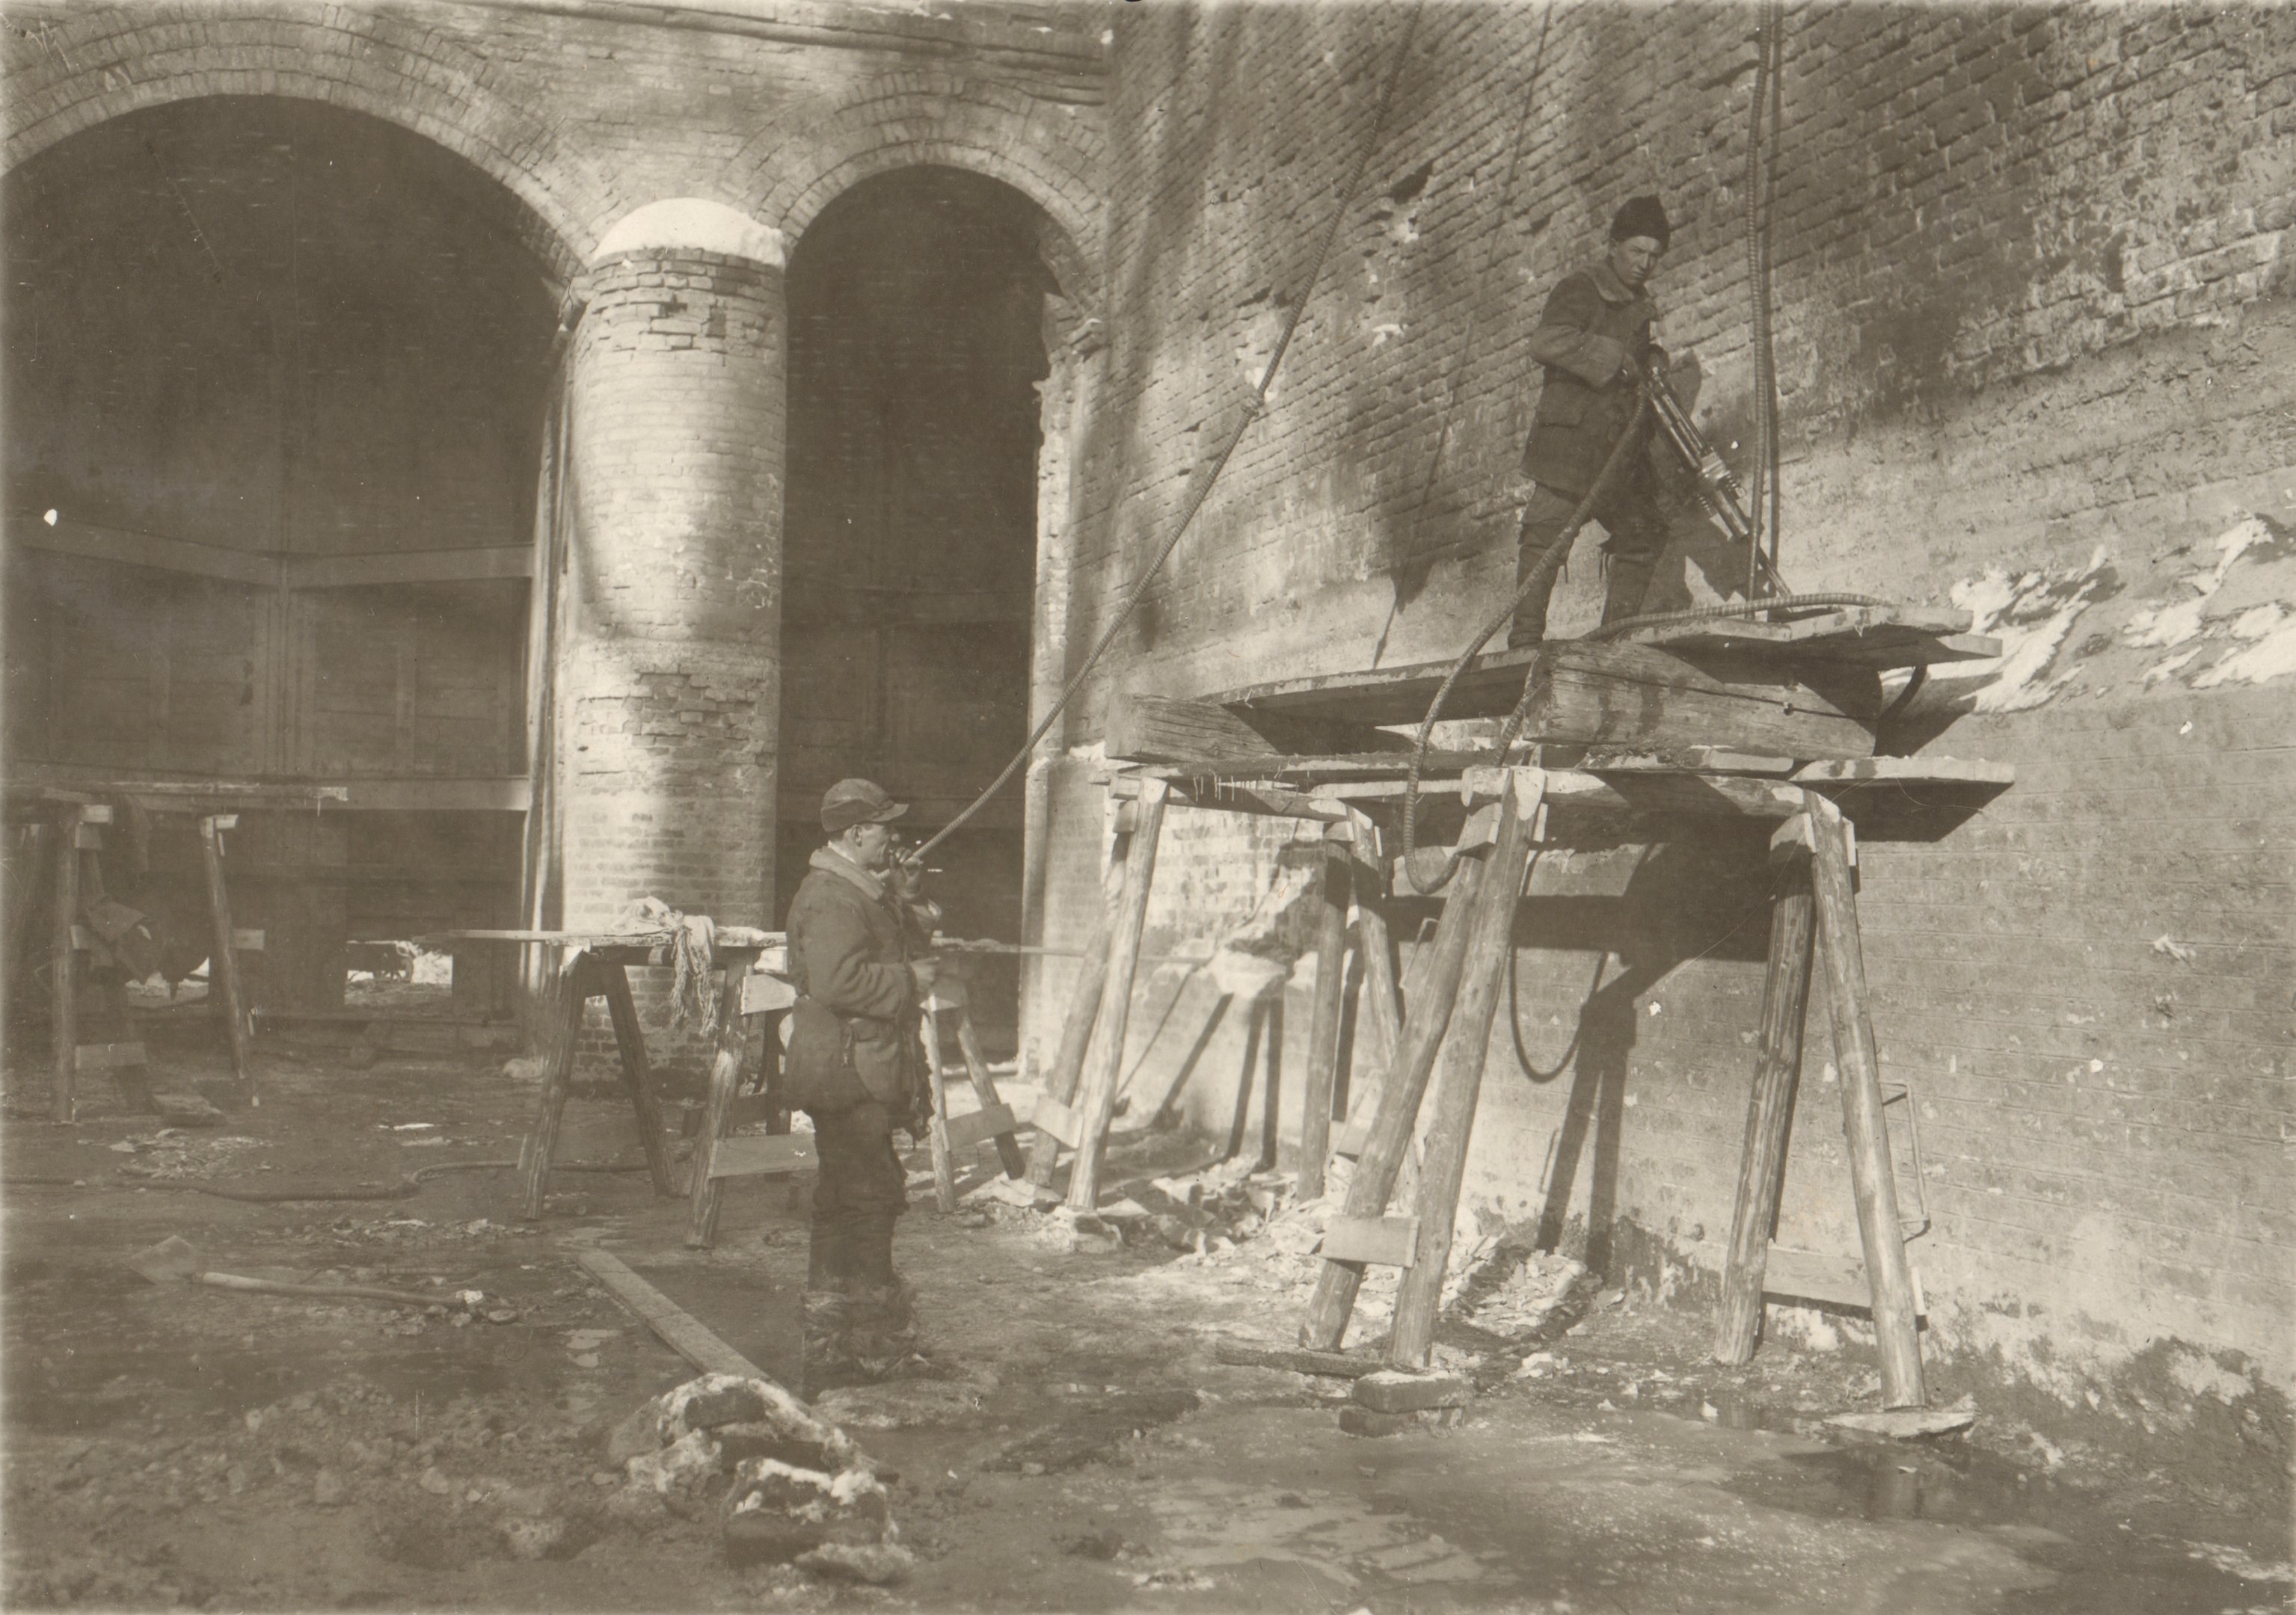 Részlet a munkából. A pneumatikus véső munkában, 1932. február 16. (Magyar Környezetvédelmi és Vízügyi Múzeum - Duna Múzeum CC BY-NC-SA)